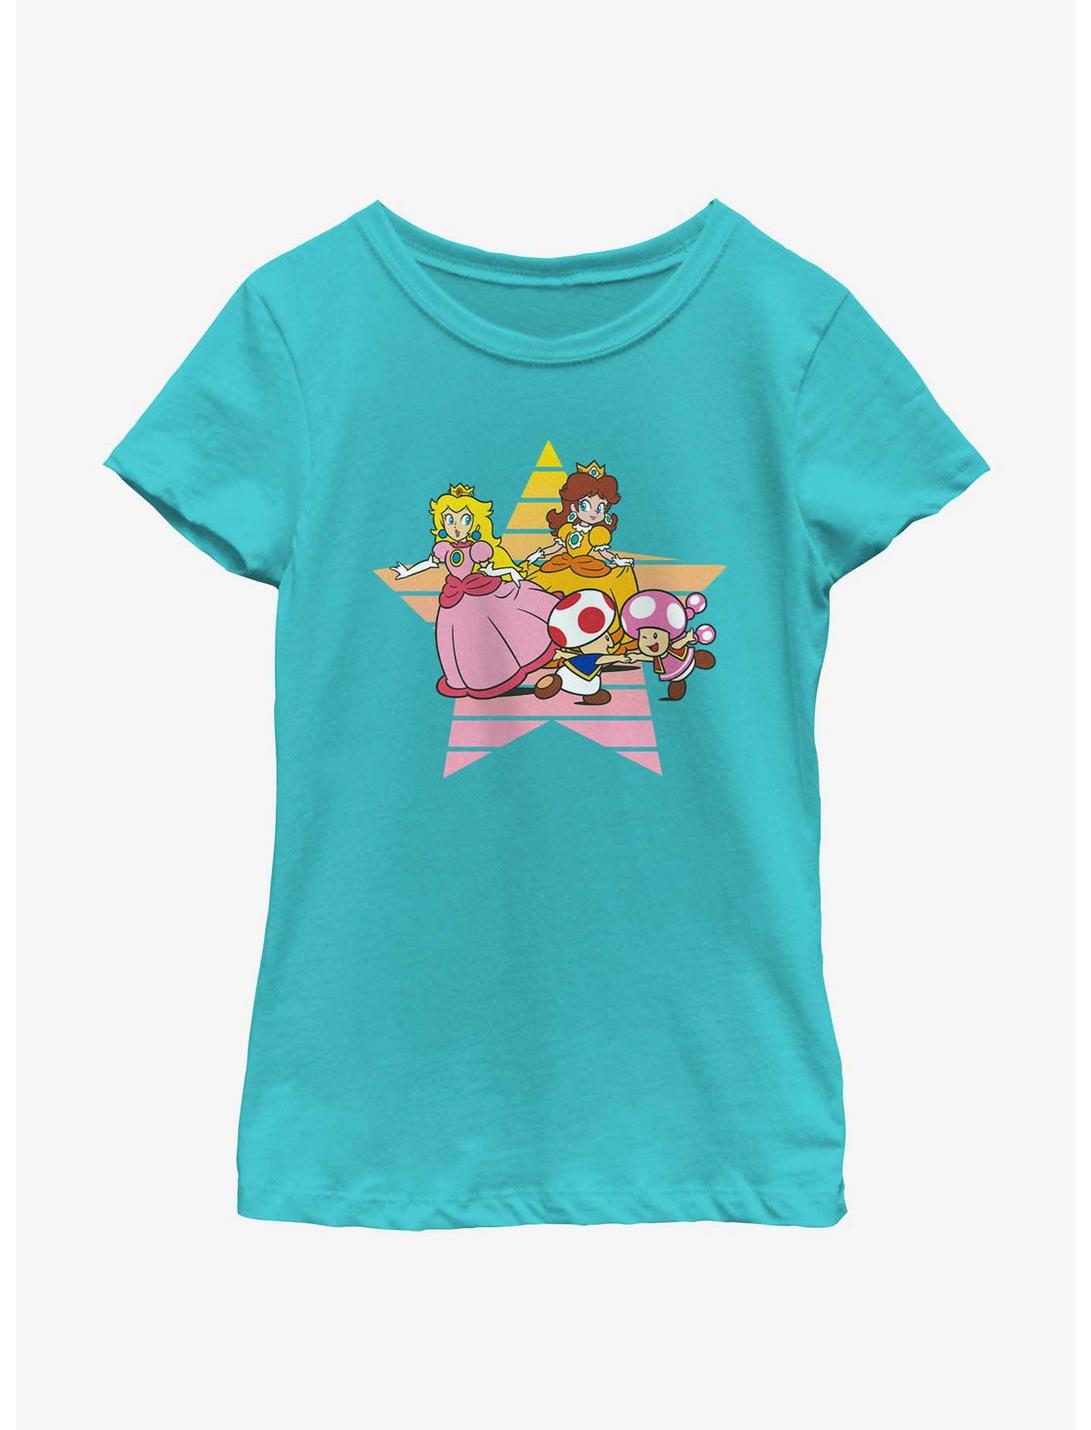 Nintendo Princess Peach & Daisy Star Youth Girls T-Shirt, TAHI BLUE, hi-res